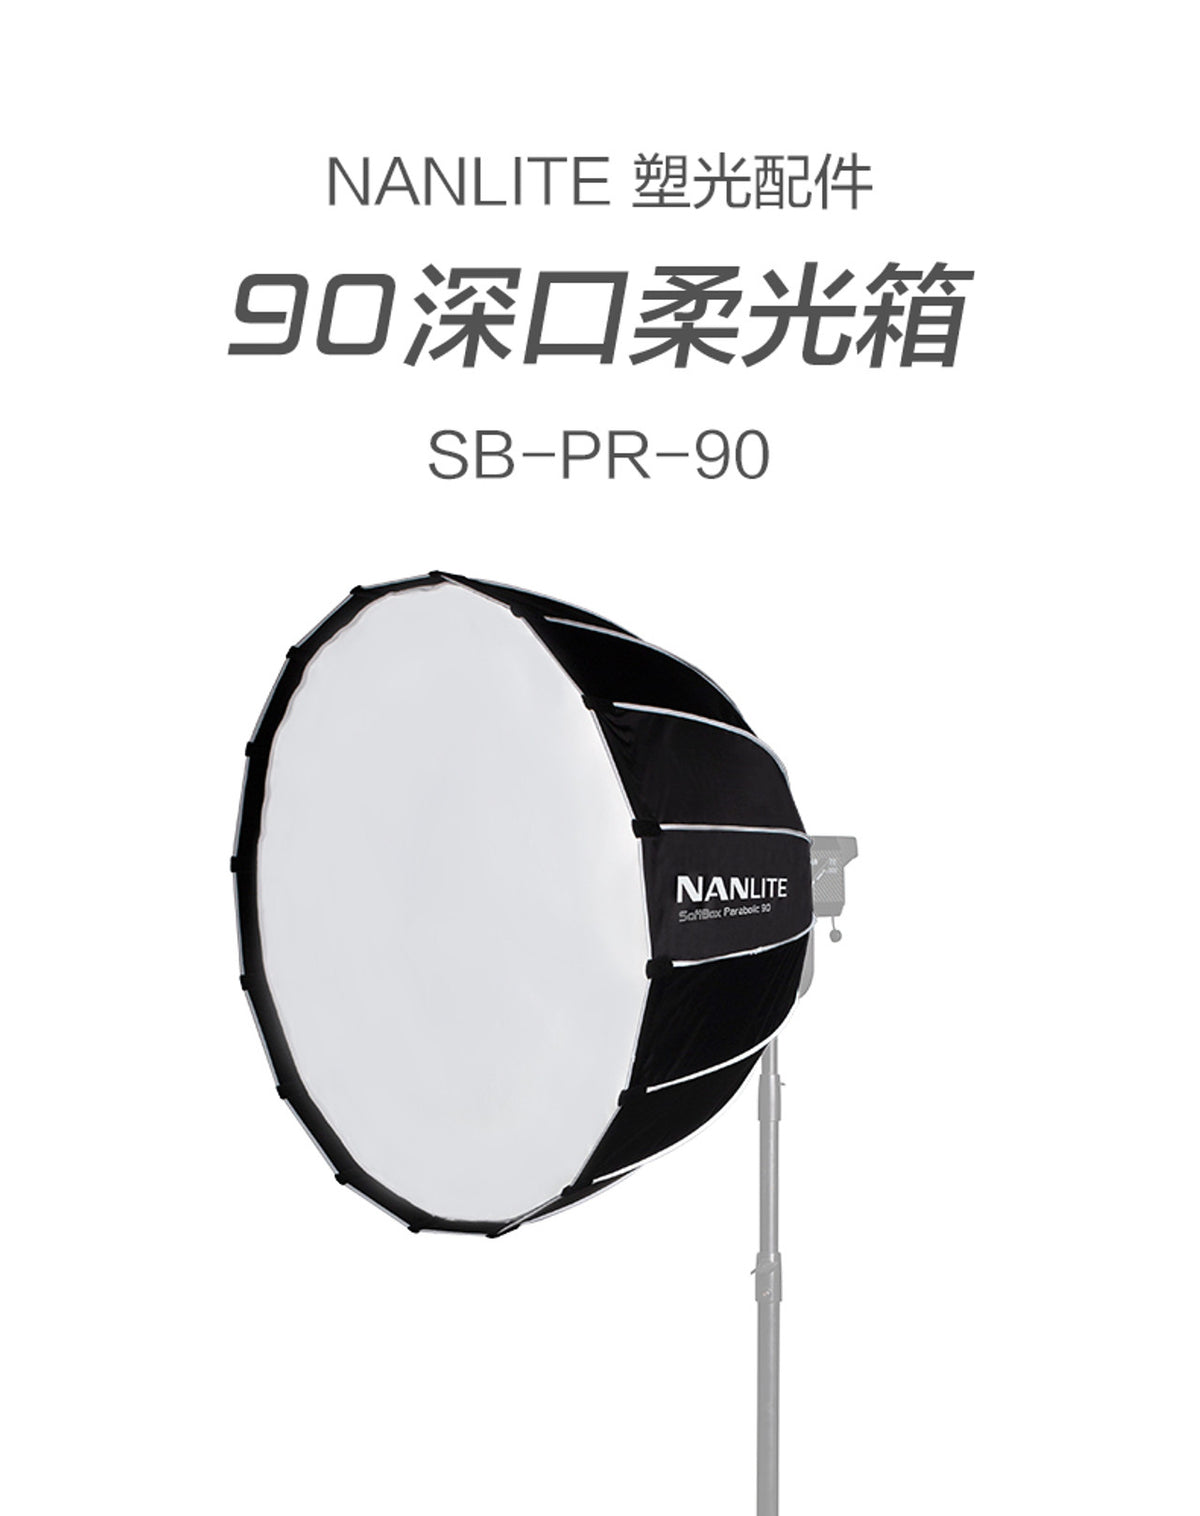 NanLite 南光 SB-PR-90 90cm Bowens Mount Softbox 柔光箱